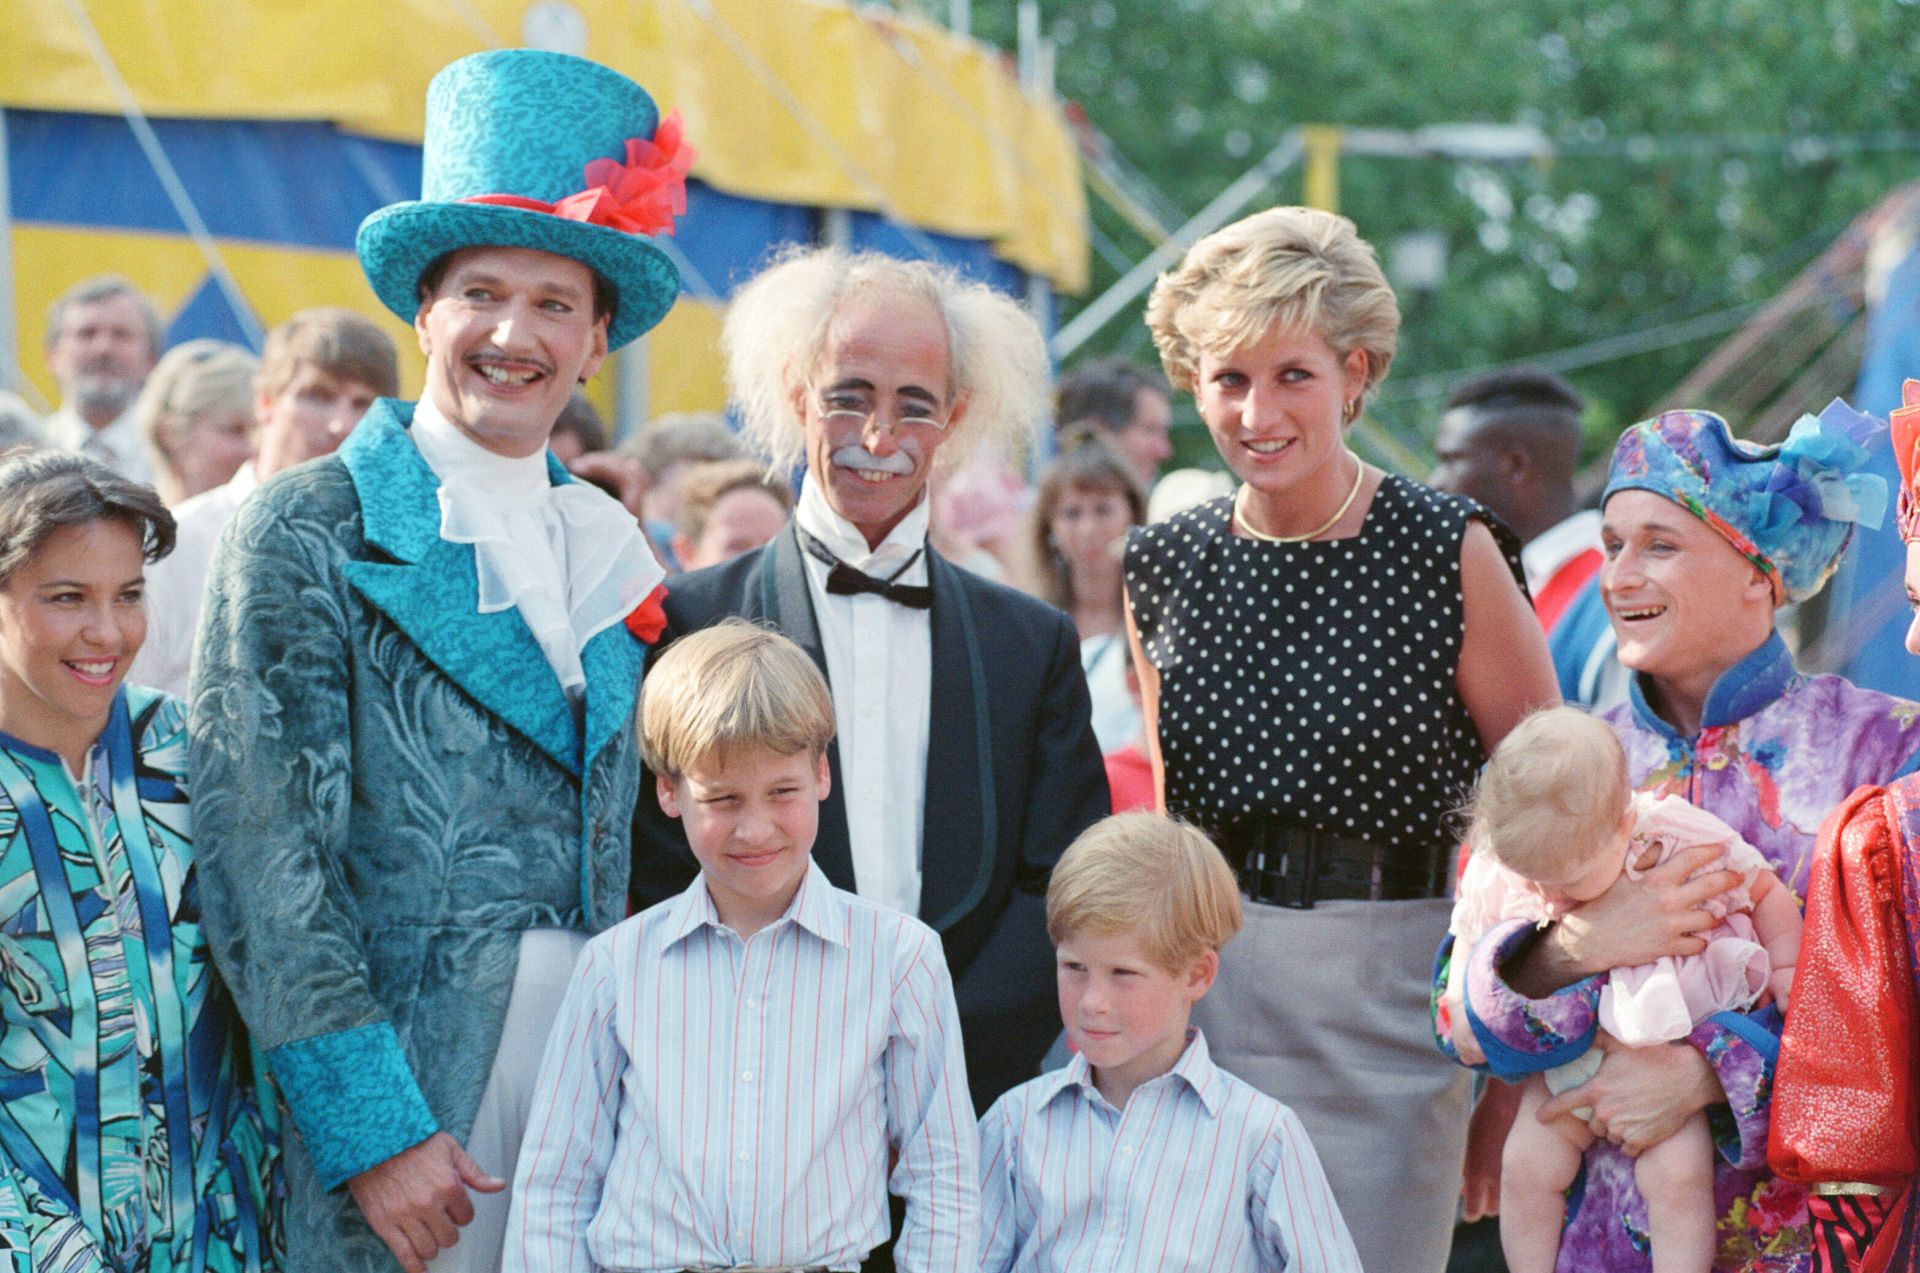 Diana hercegnő fiaival, Vilmos herceggel és Harry herceggel a Le Cirque du Soleil előadásán, 1990-ben.